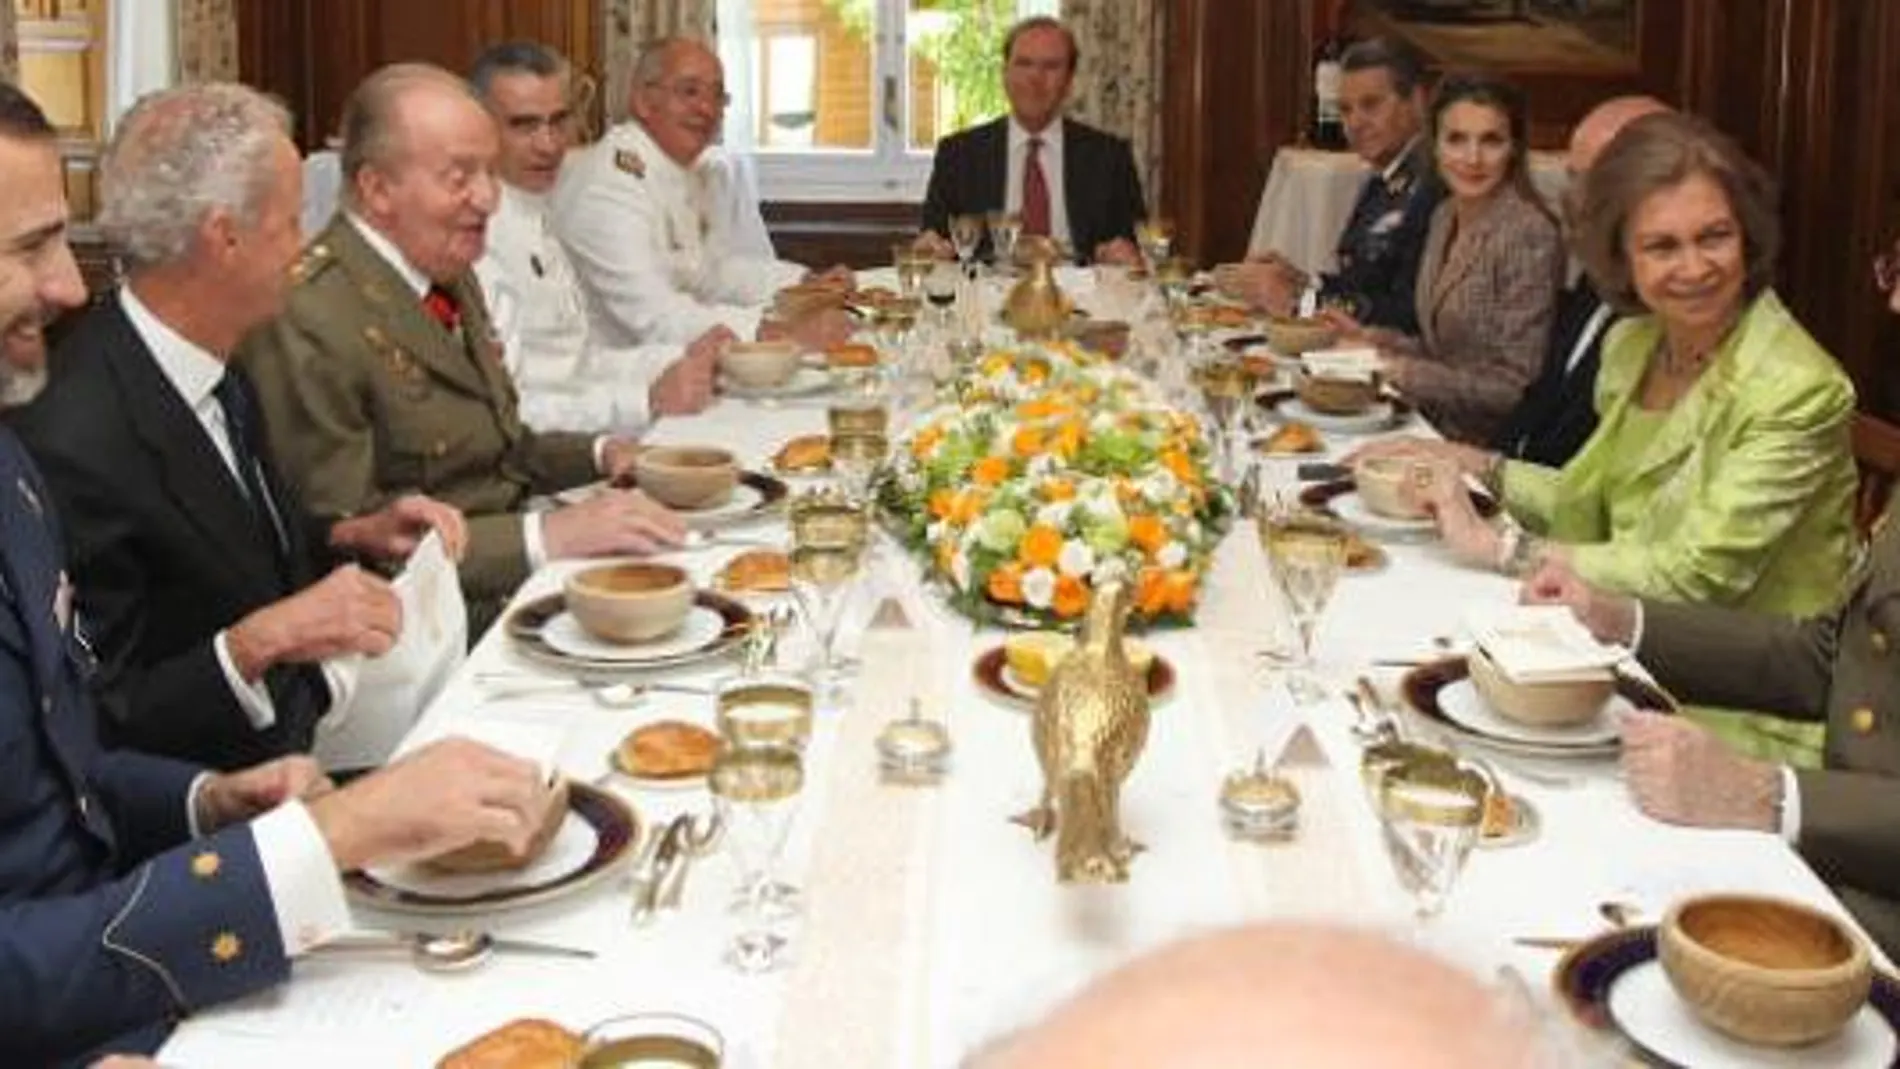 El Rey a la izquierda, junto al ministro de Defensa, durante el almuerzo